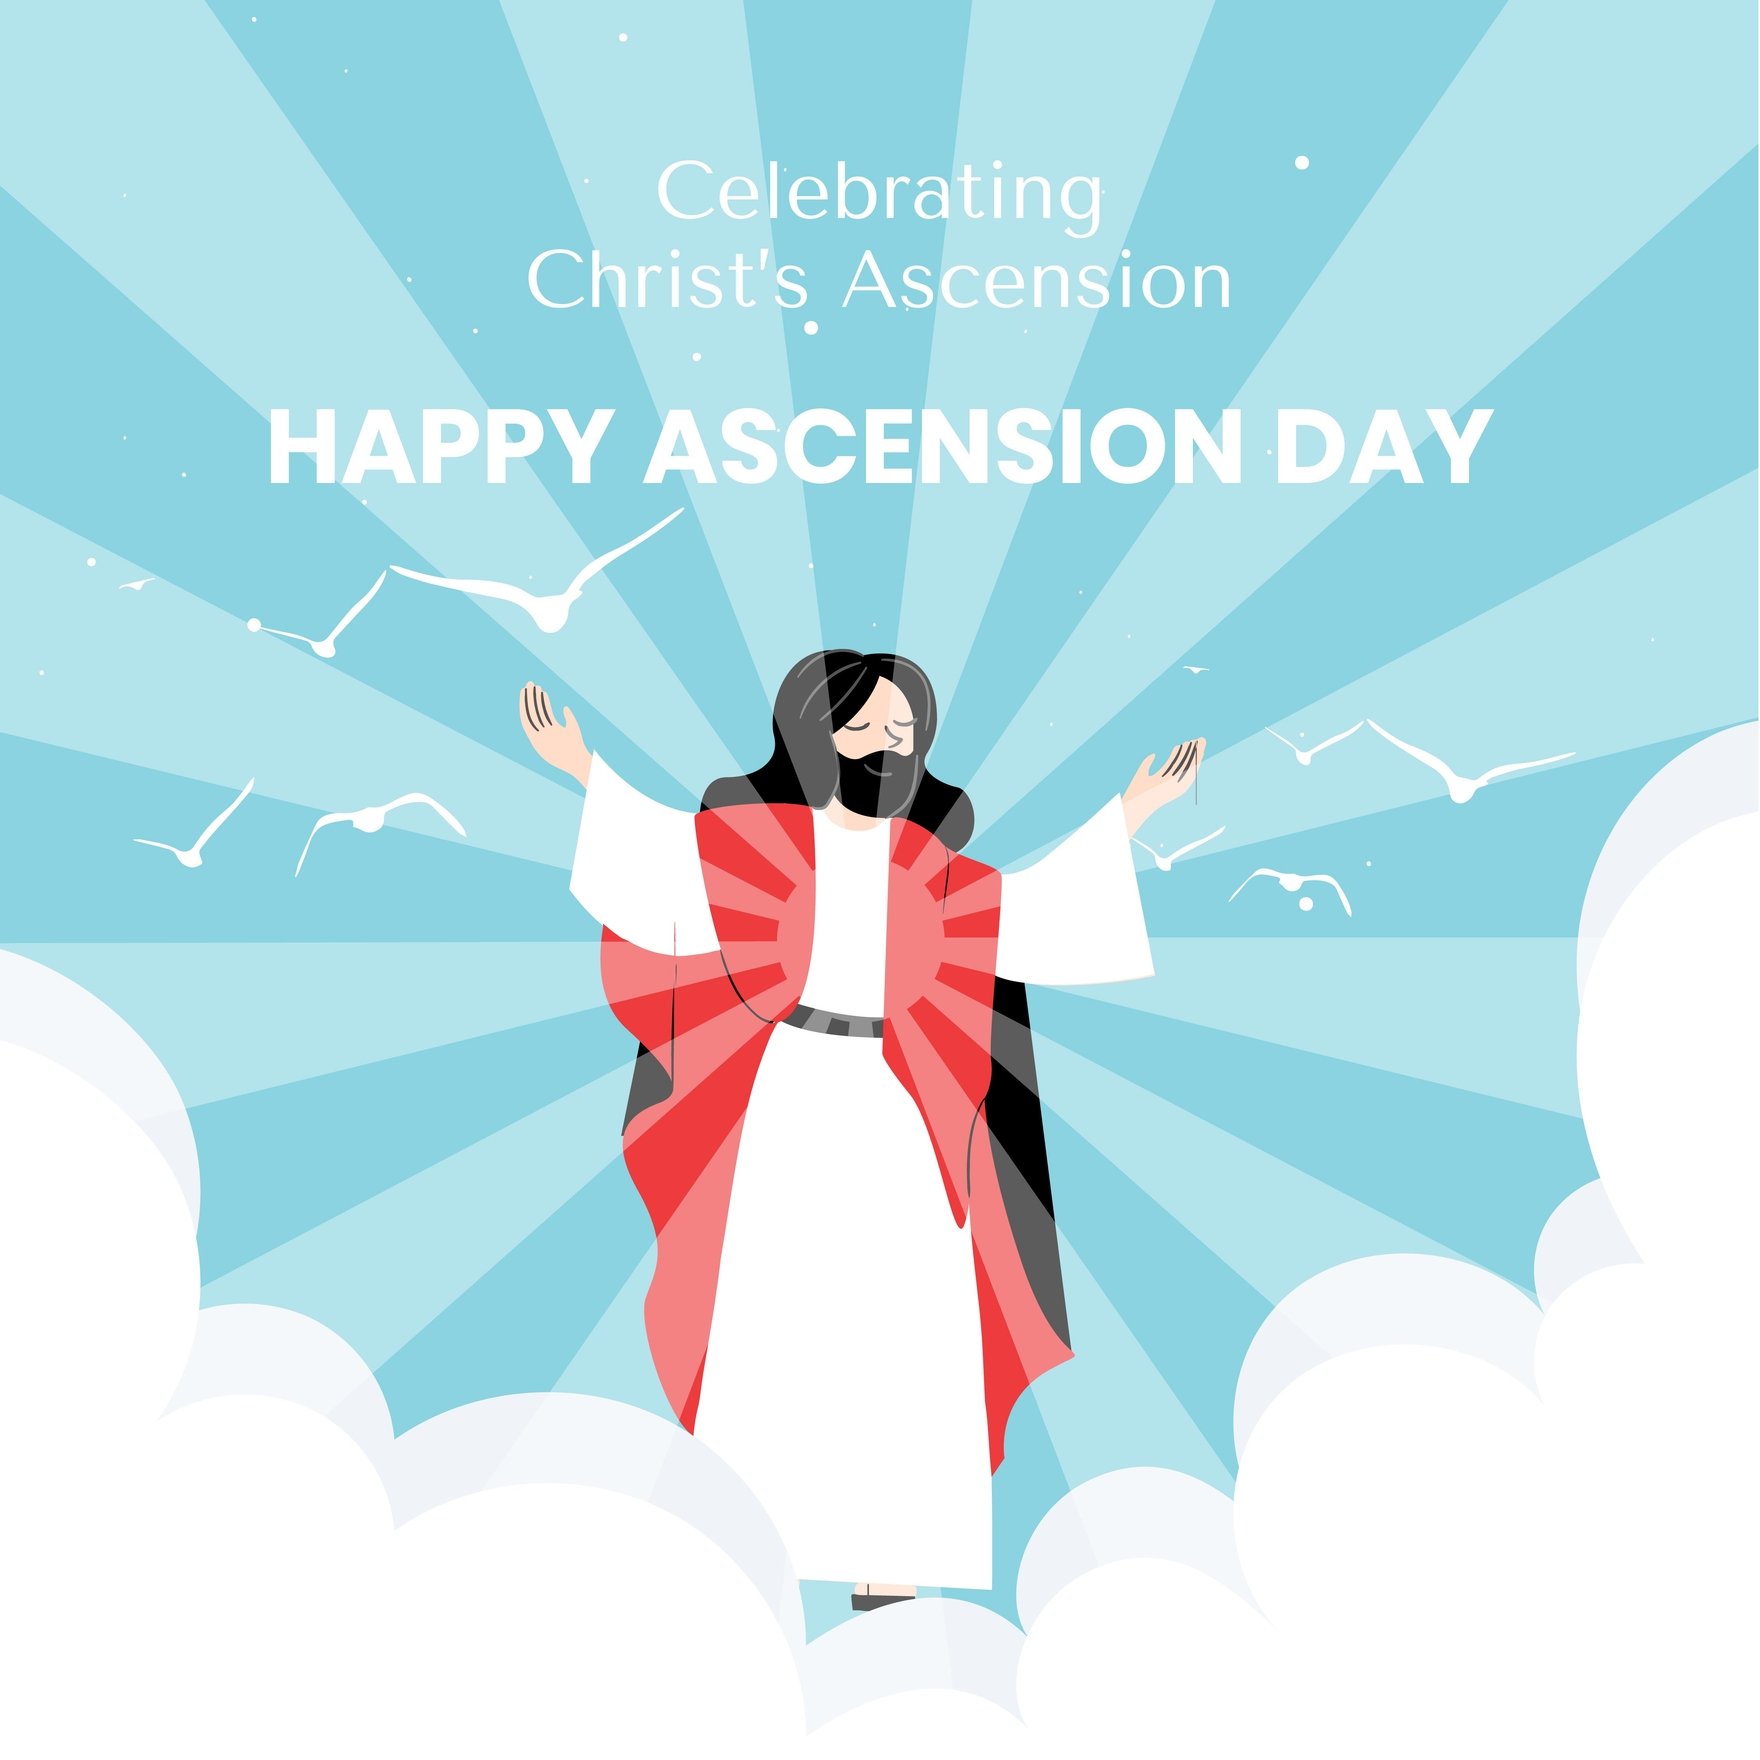 Free Ascension Day Instagram Post in Illustrator, PSD, EPS, SVG, PNG, JPEG